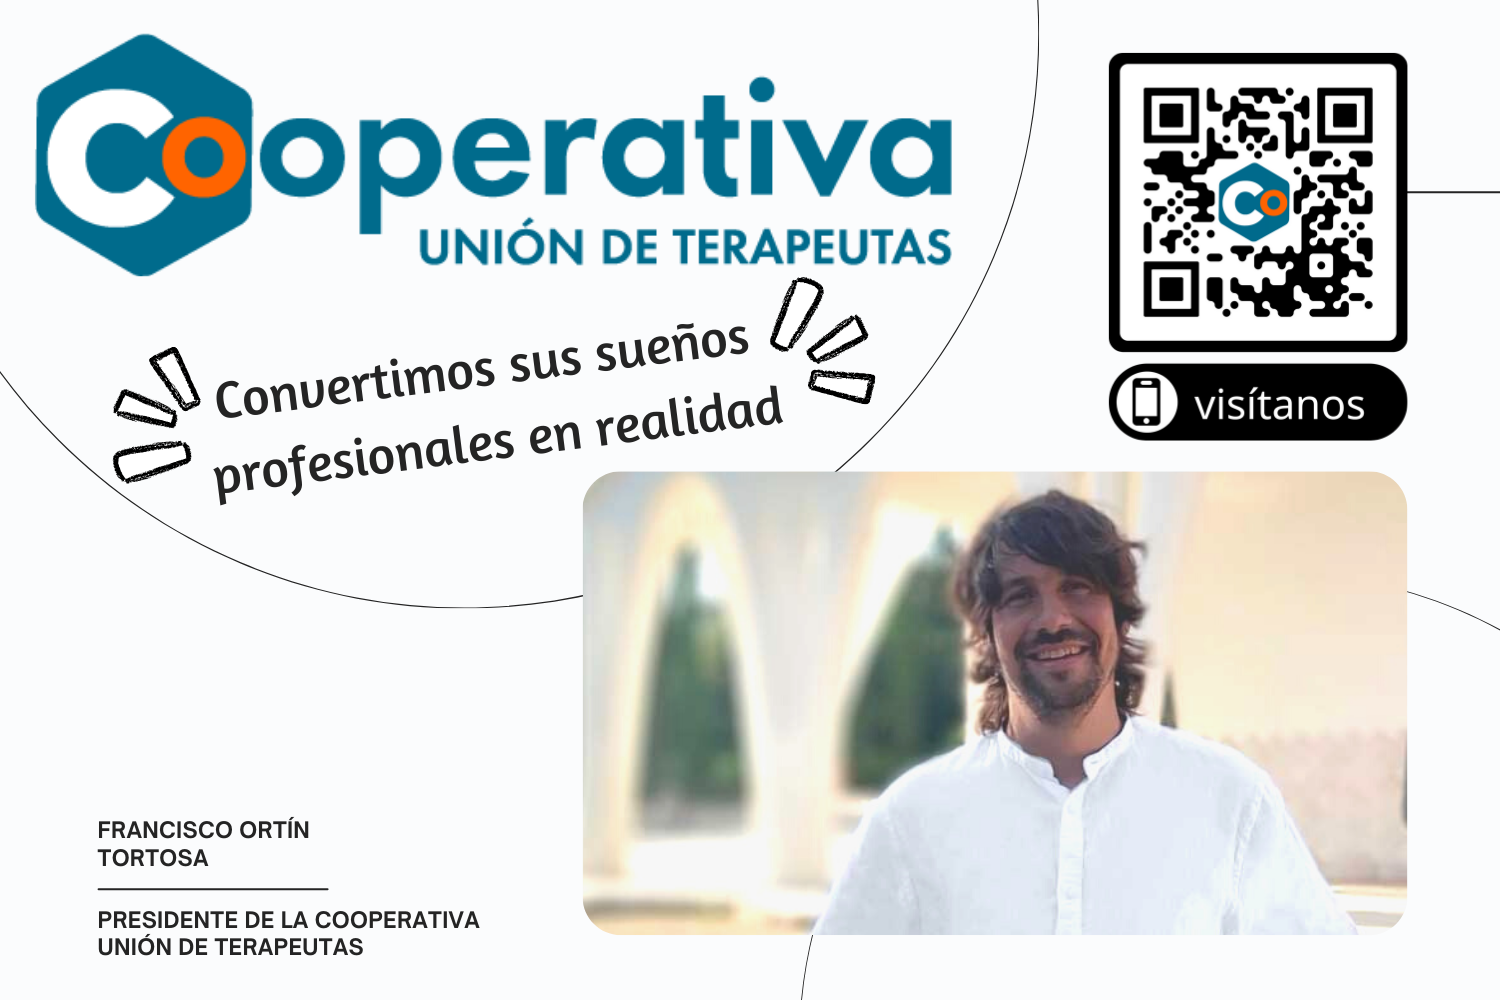 imagen_cooperativa_union_de_terapeutas